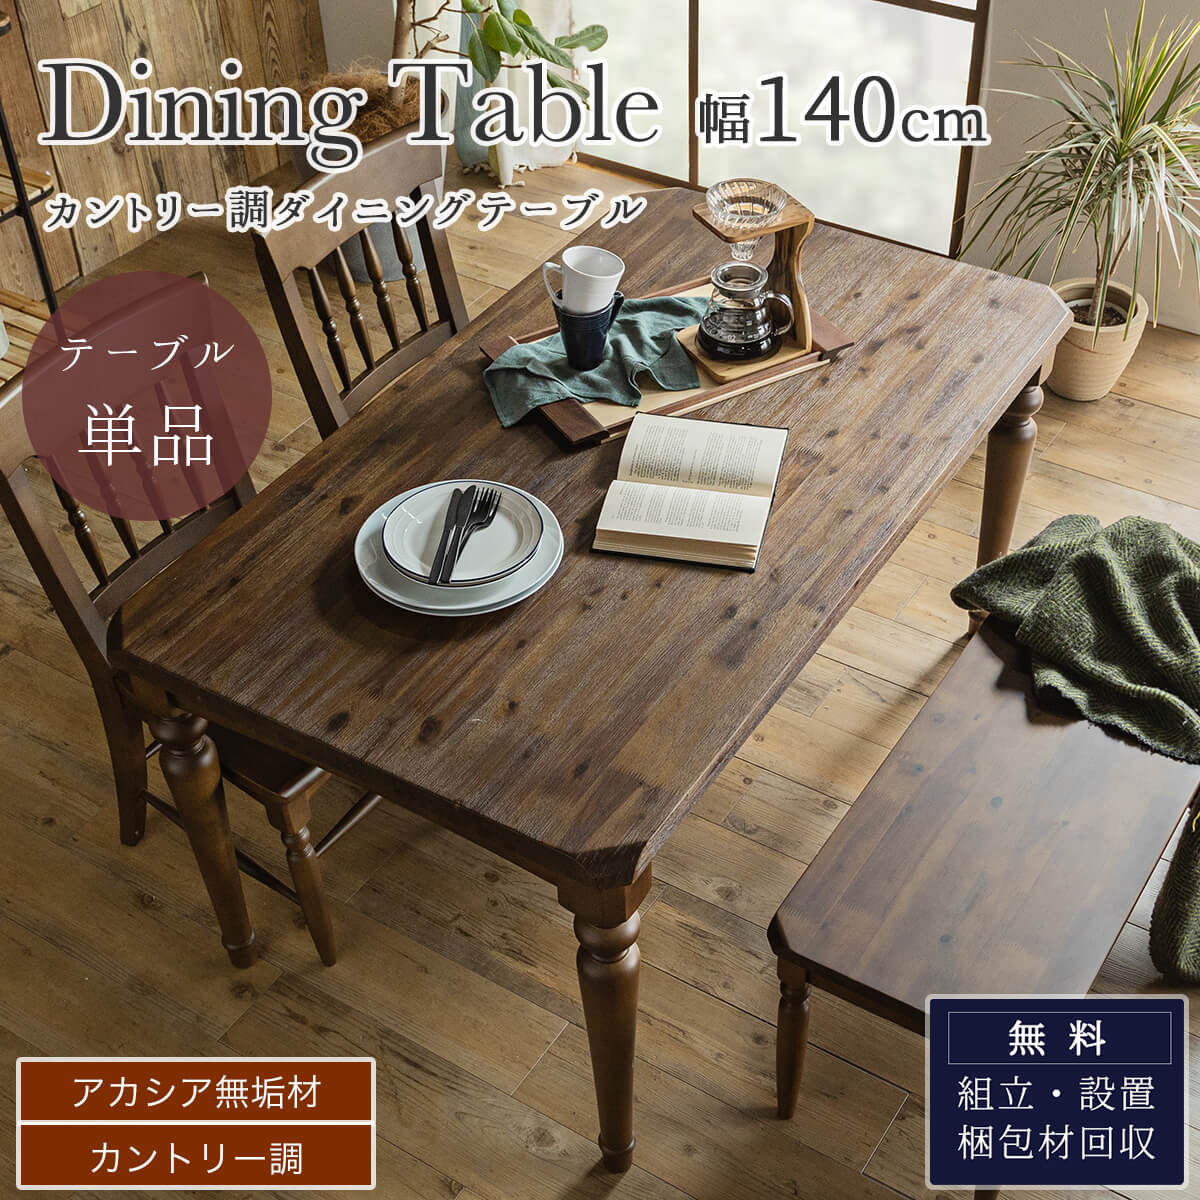 F01112_ダイニング 食卓 木目 北欧 日本 おしゃれ おすすめ ダイニング